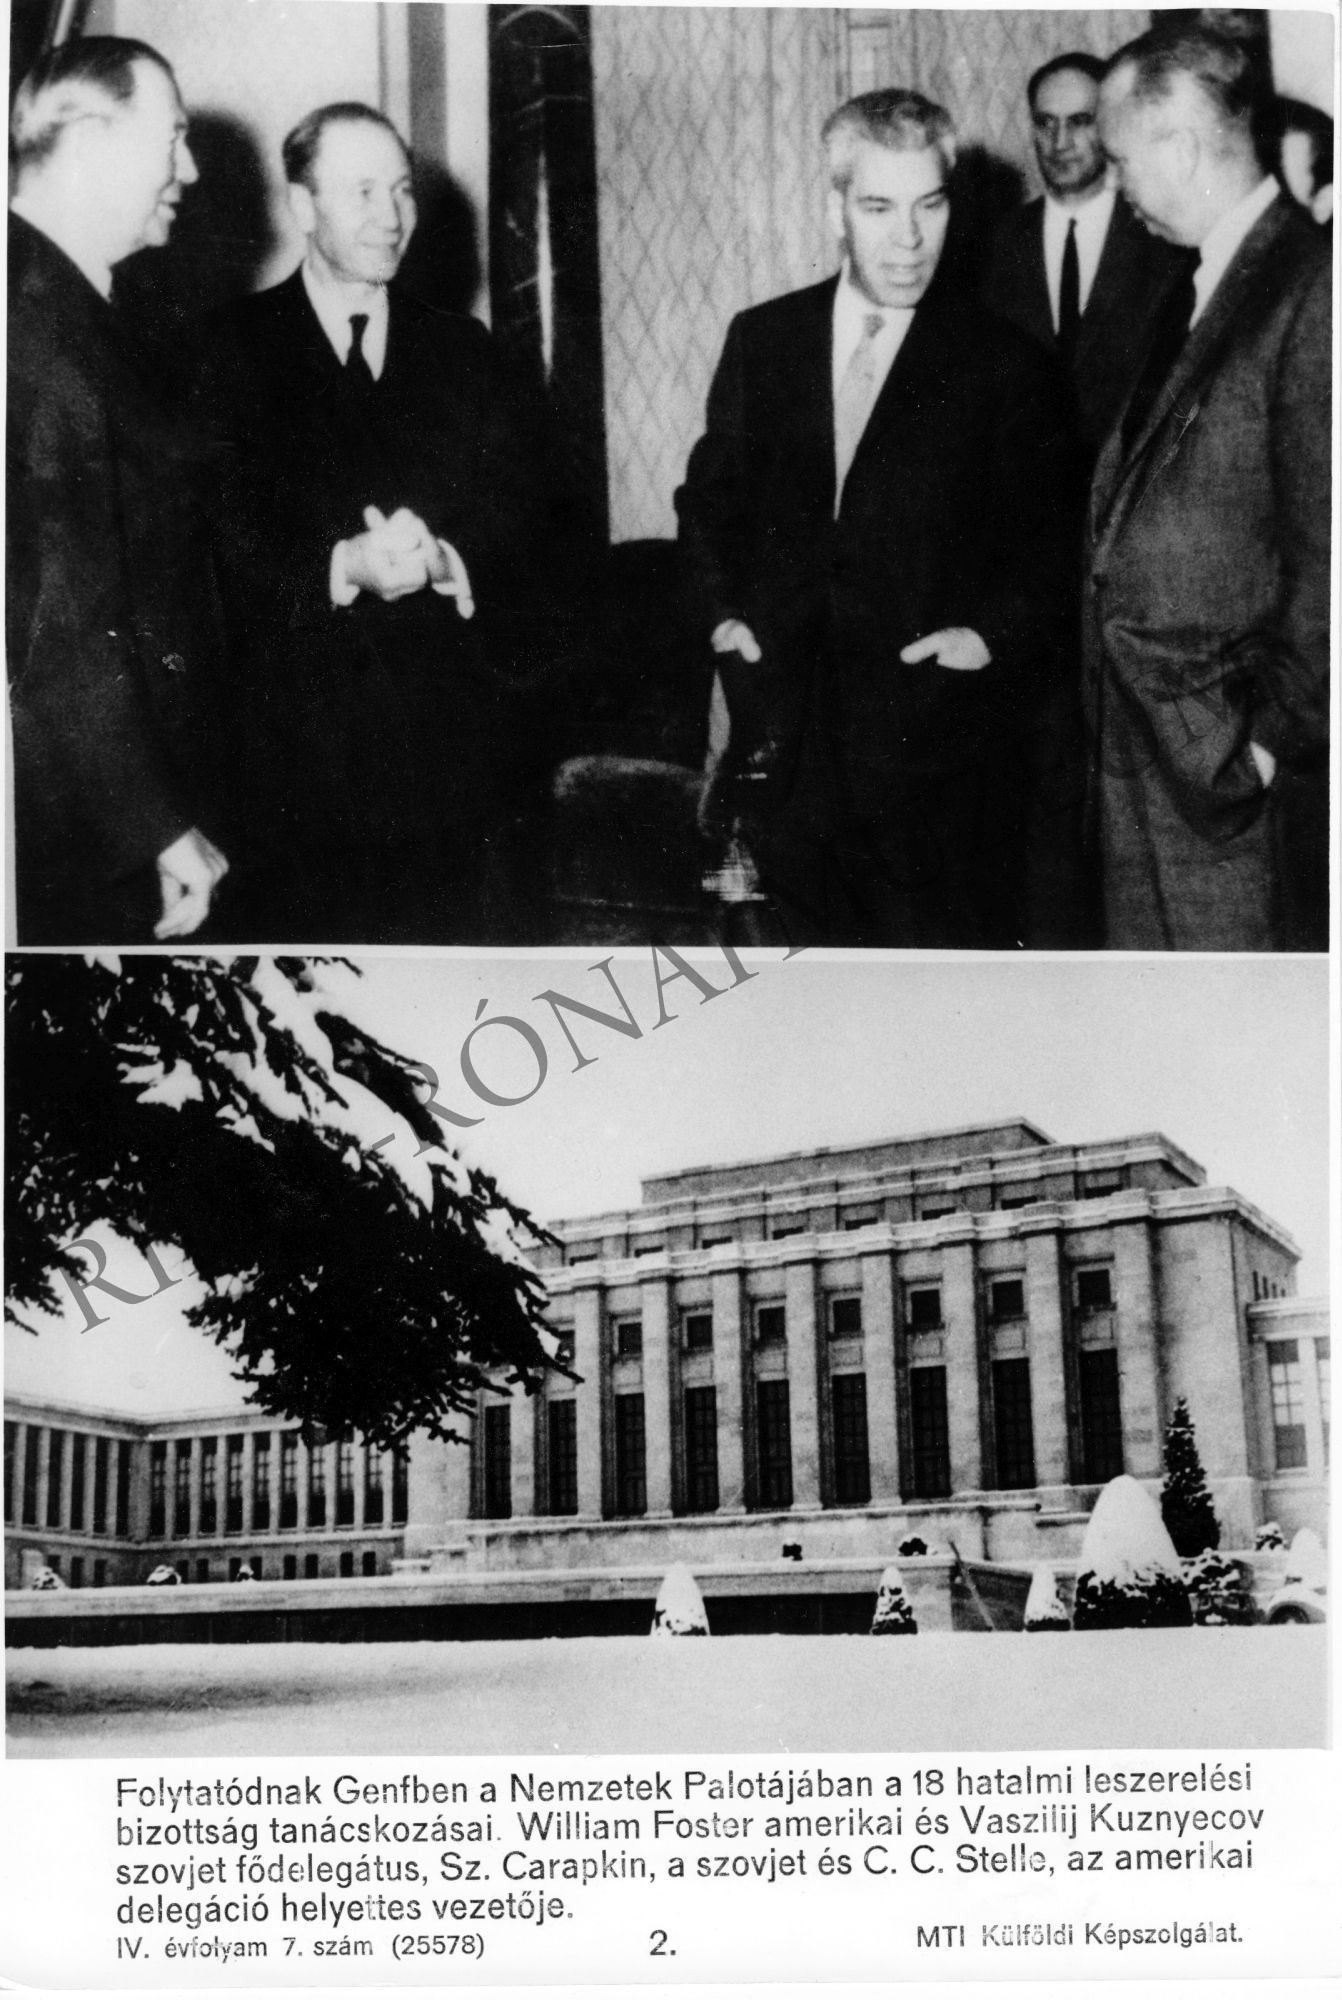 Folytatódnak Genfben a Nemzetek Palotájában a 18 hatalmi leszerelési bizottság tanácskozásai. (Rippl-Rónai Múzeum CC BY-NC-SA)